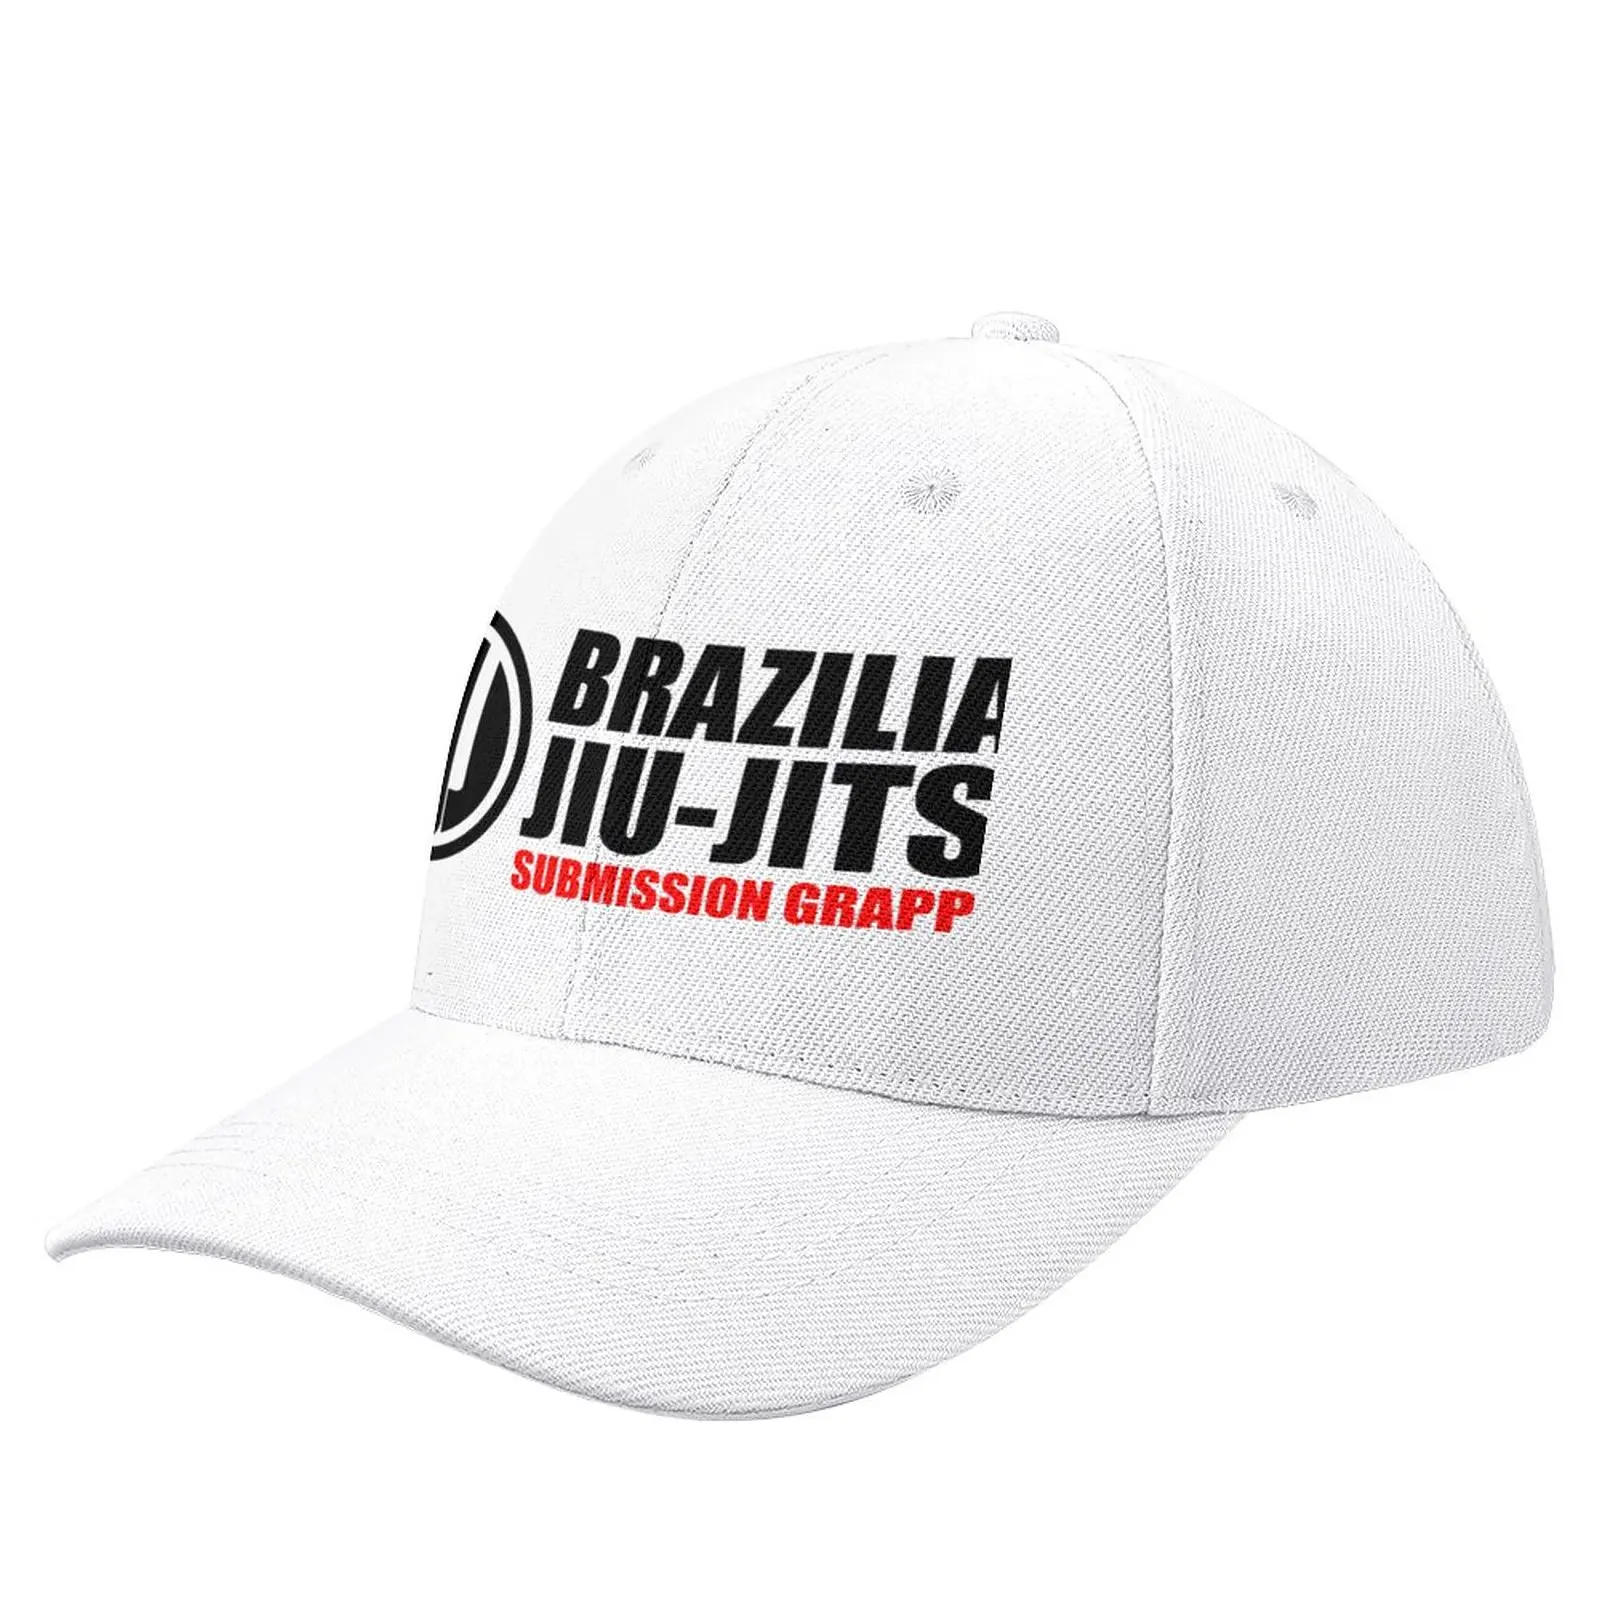 

BJJ - Brazilian Jiu-Jitsu - Submission Grappling - White Baseball Cap Rave fashionable |-F-| Men'S Hats Women'S